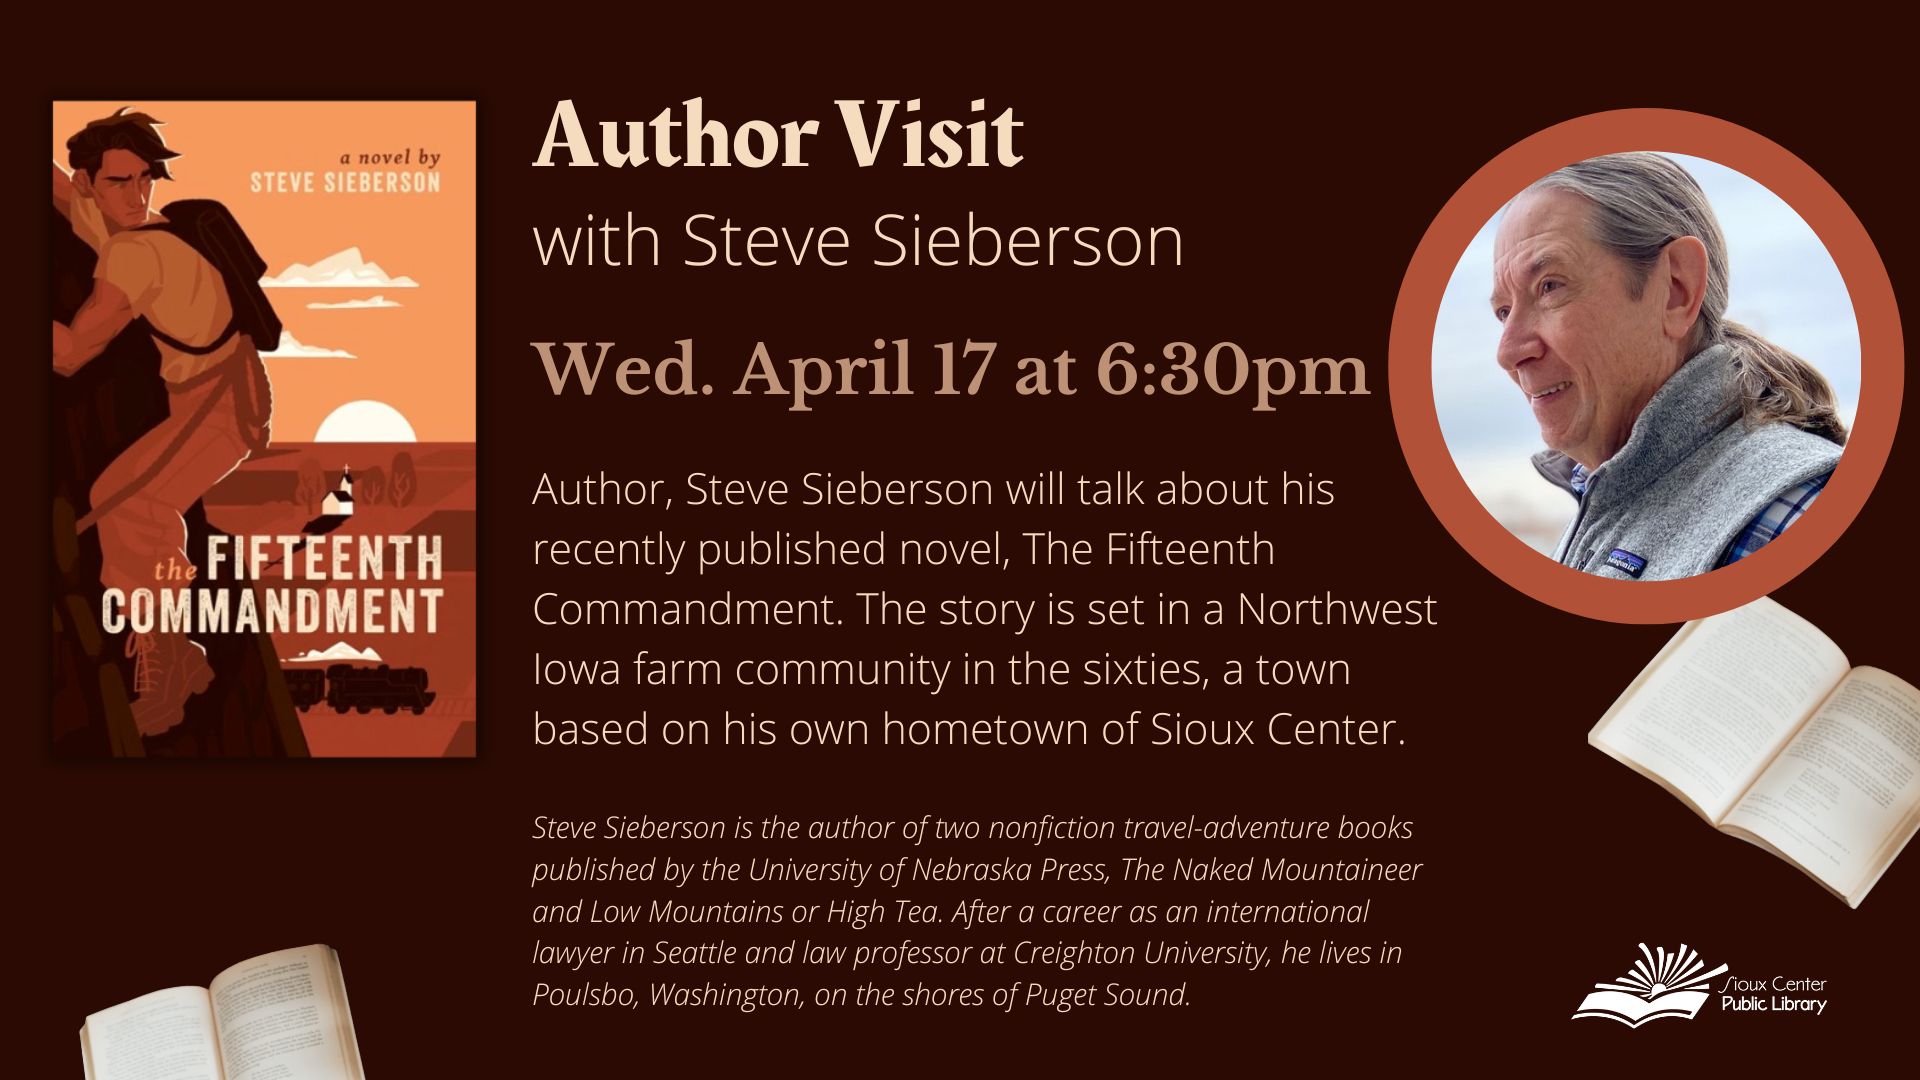 Author Steve Sieberson